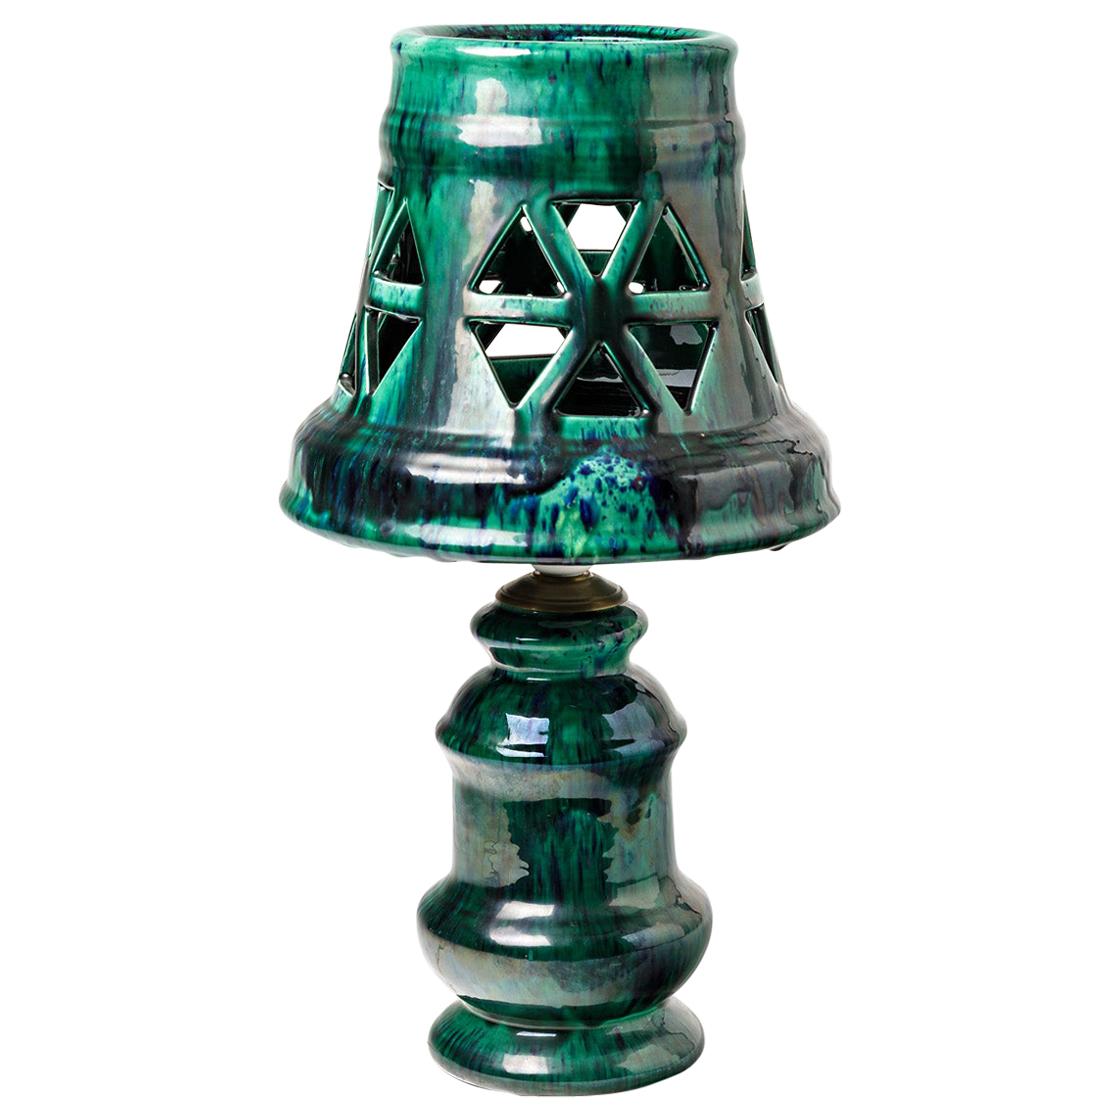 Keramische Lampe mit grüner Glasur, signiert Morvan, um 1960-1970